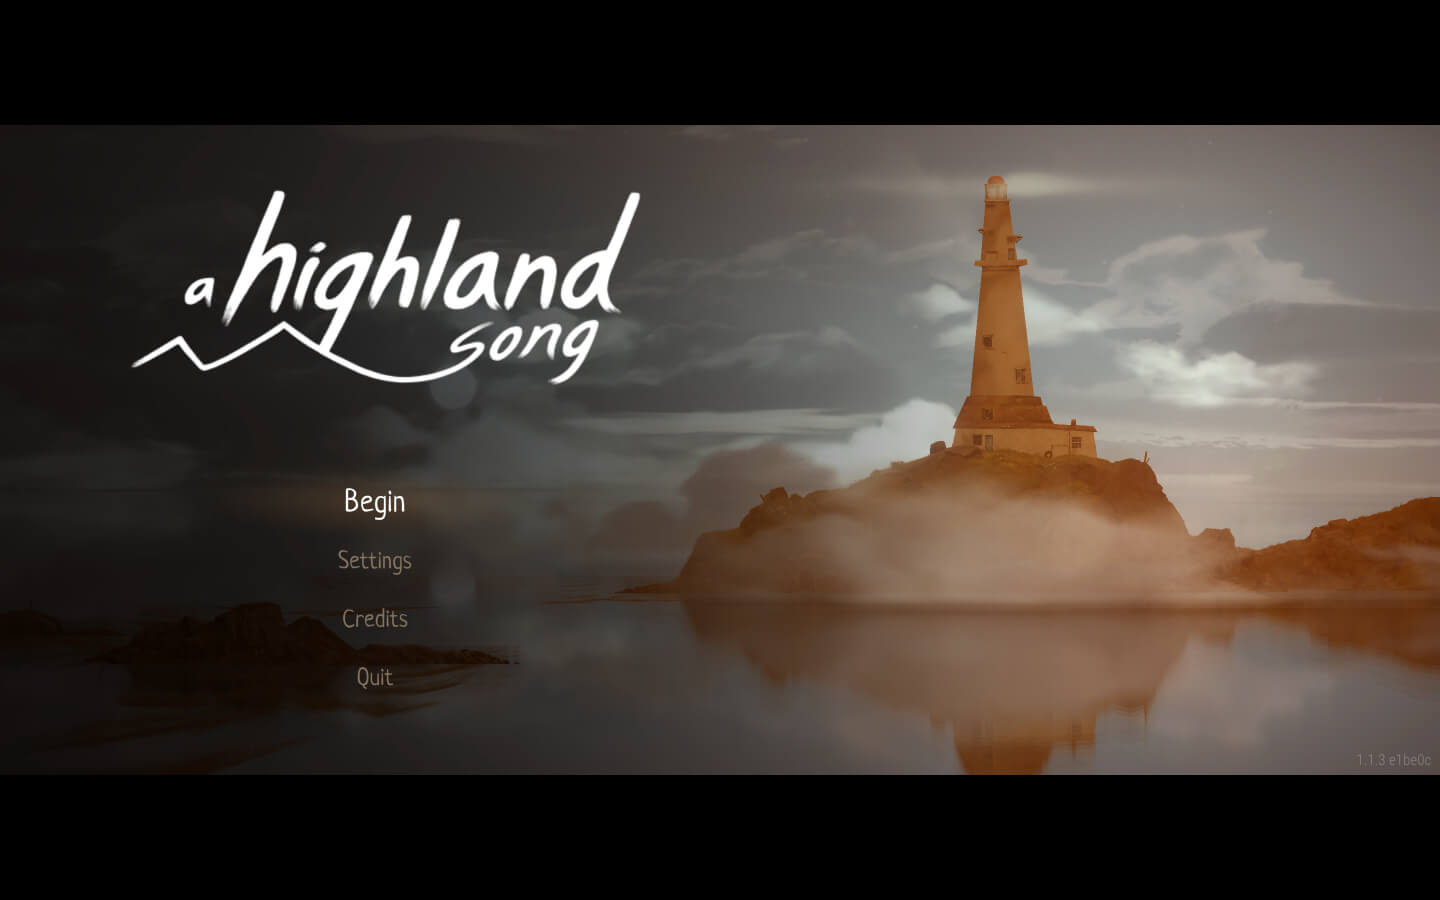 高地轻歌 A Highland Song for Mac v1.1.3 英文原生版-1